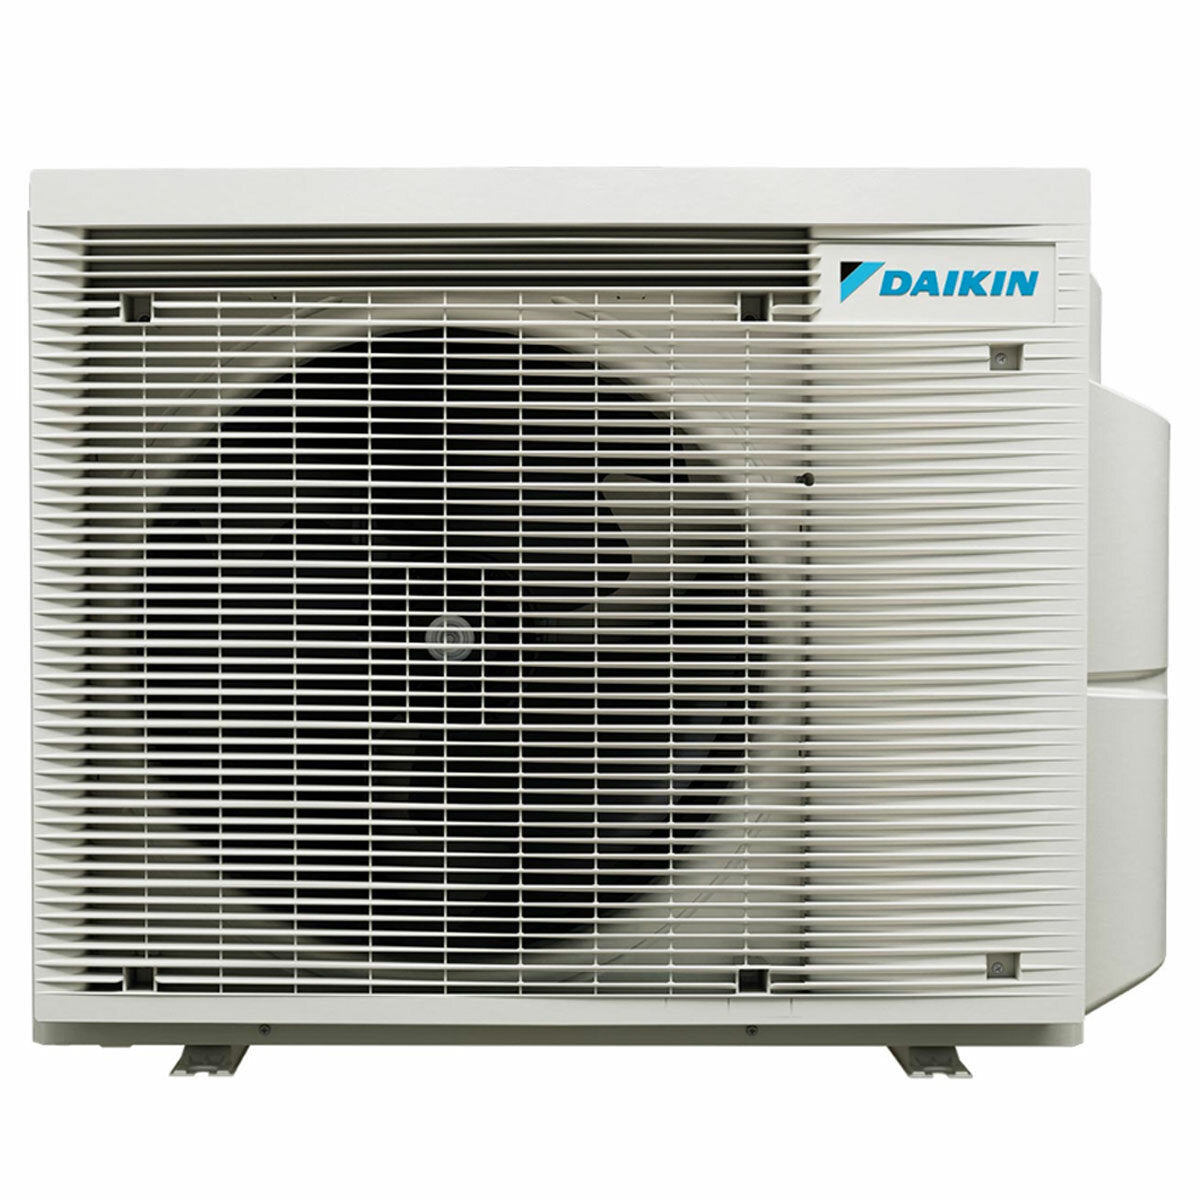 Daikin Stylish Trial Split Klimaanlage 7000 + 7000 + 18000 BTU Inverter A++ WLAN Außengerät 6,8 kW